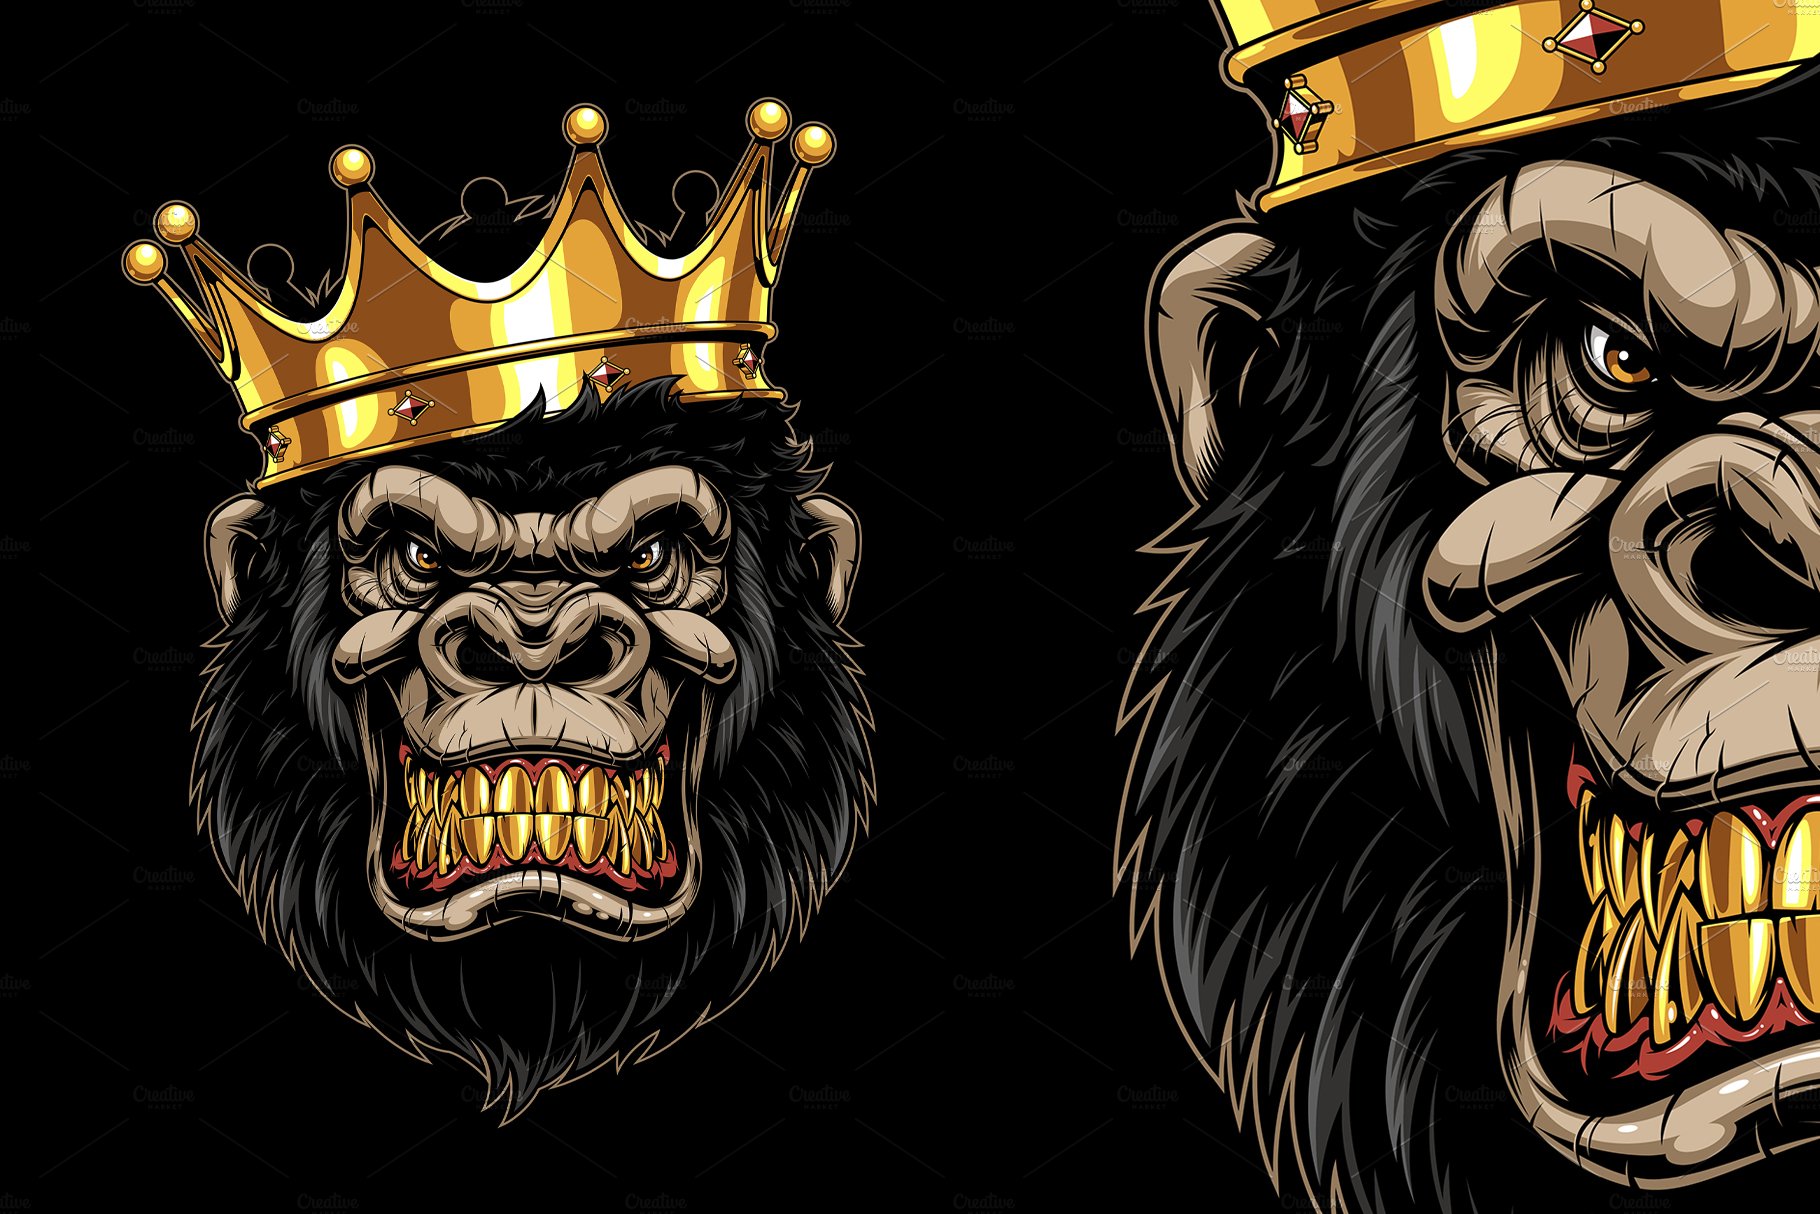 Monkey King. cover image.